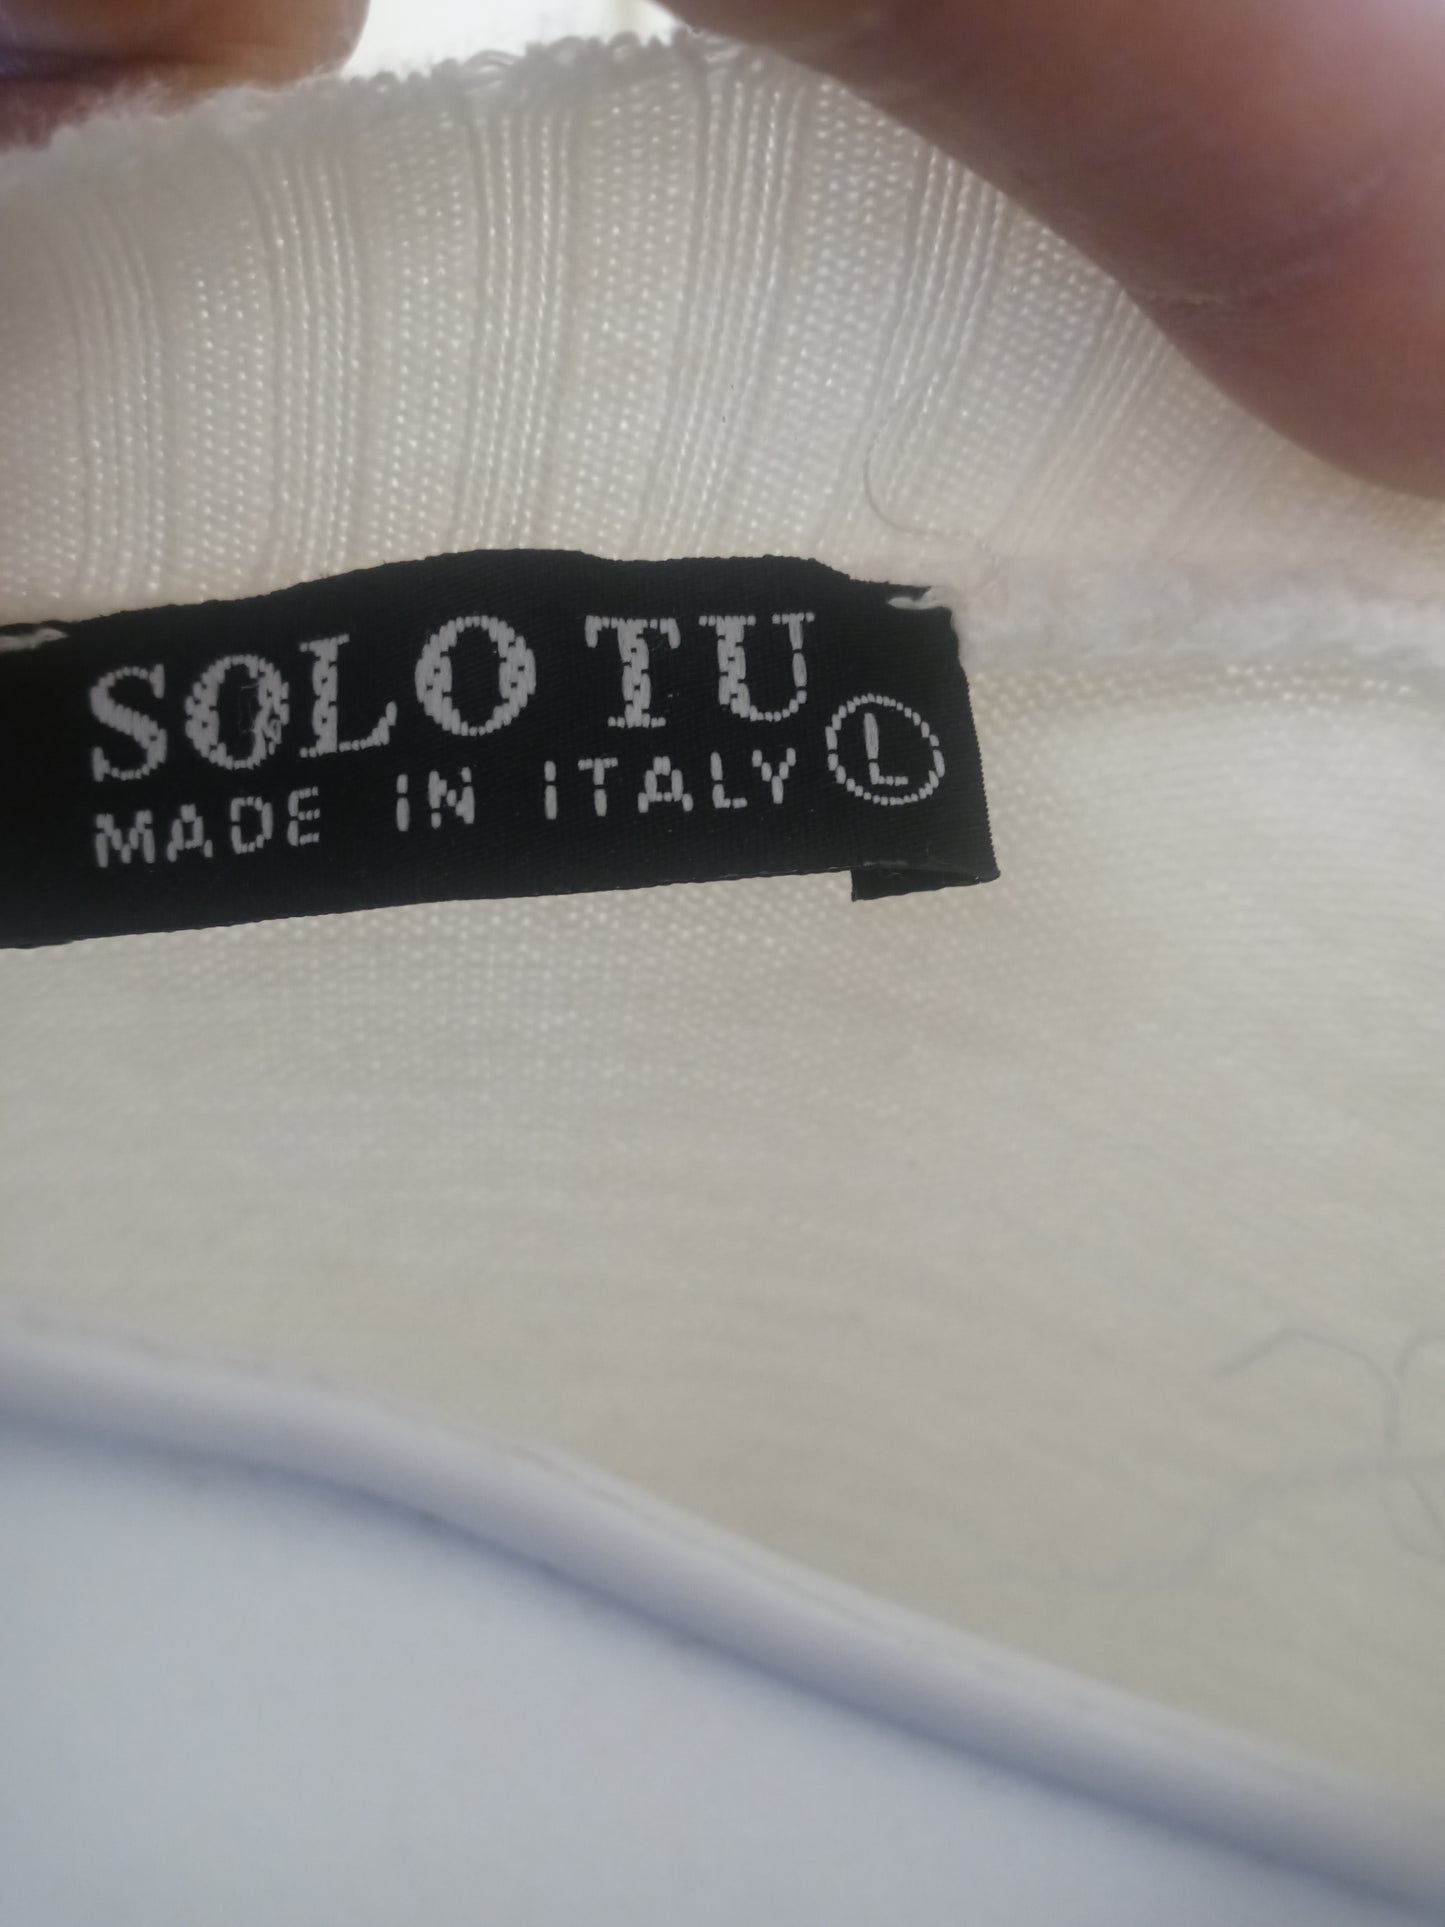 Solo Tu Italian sweater